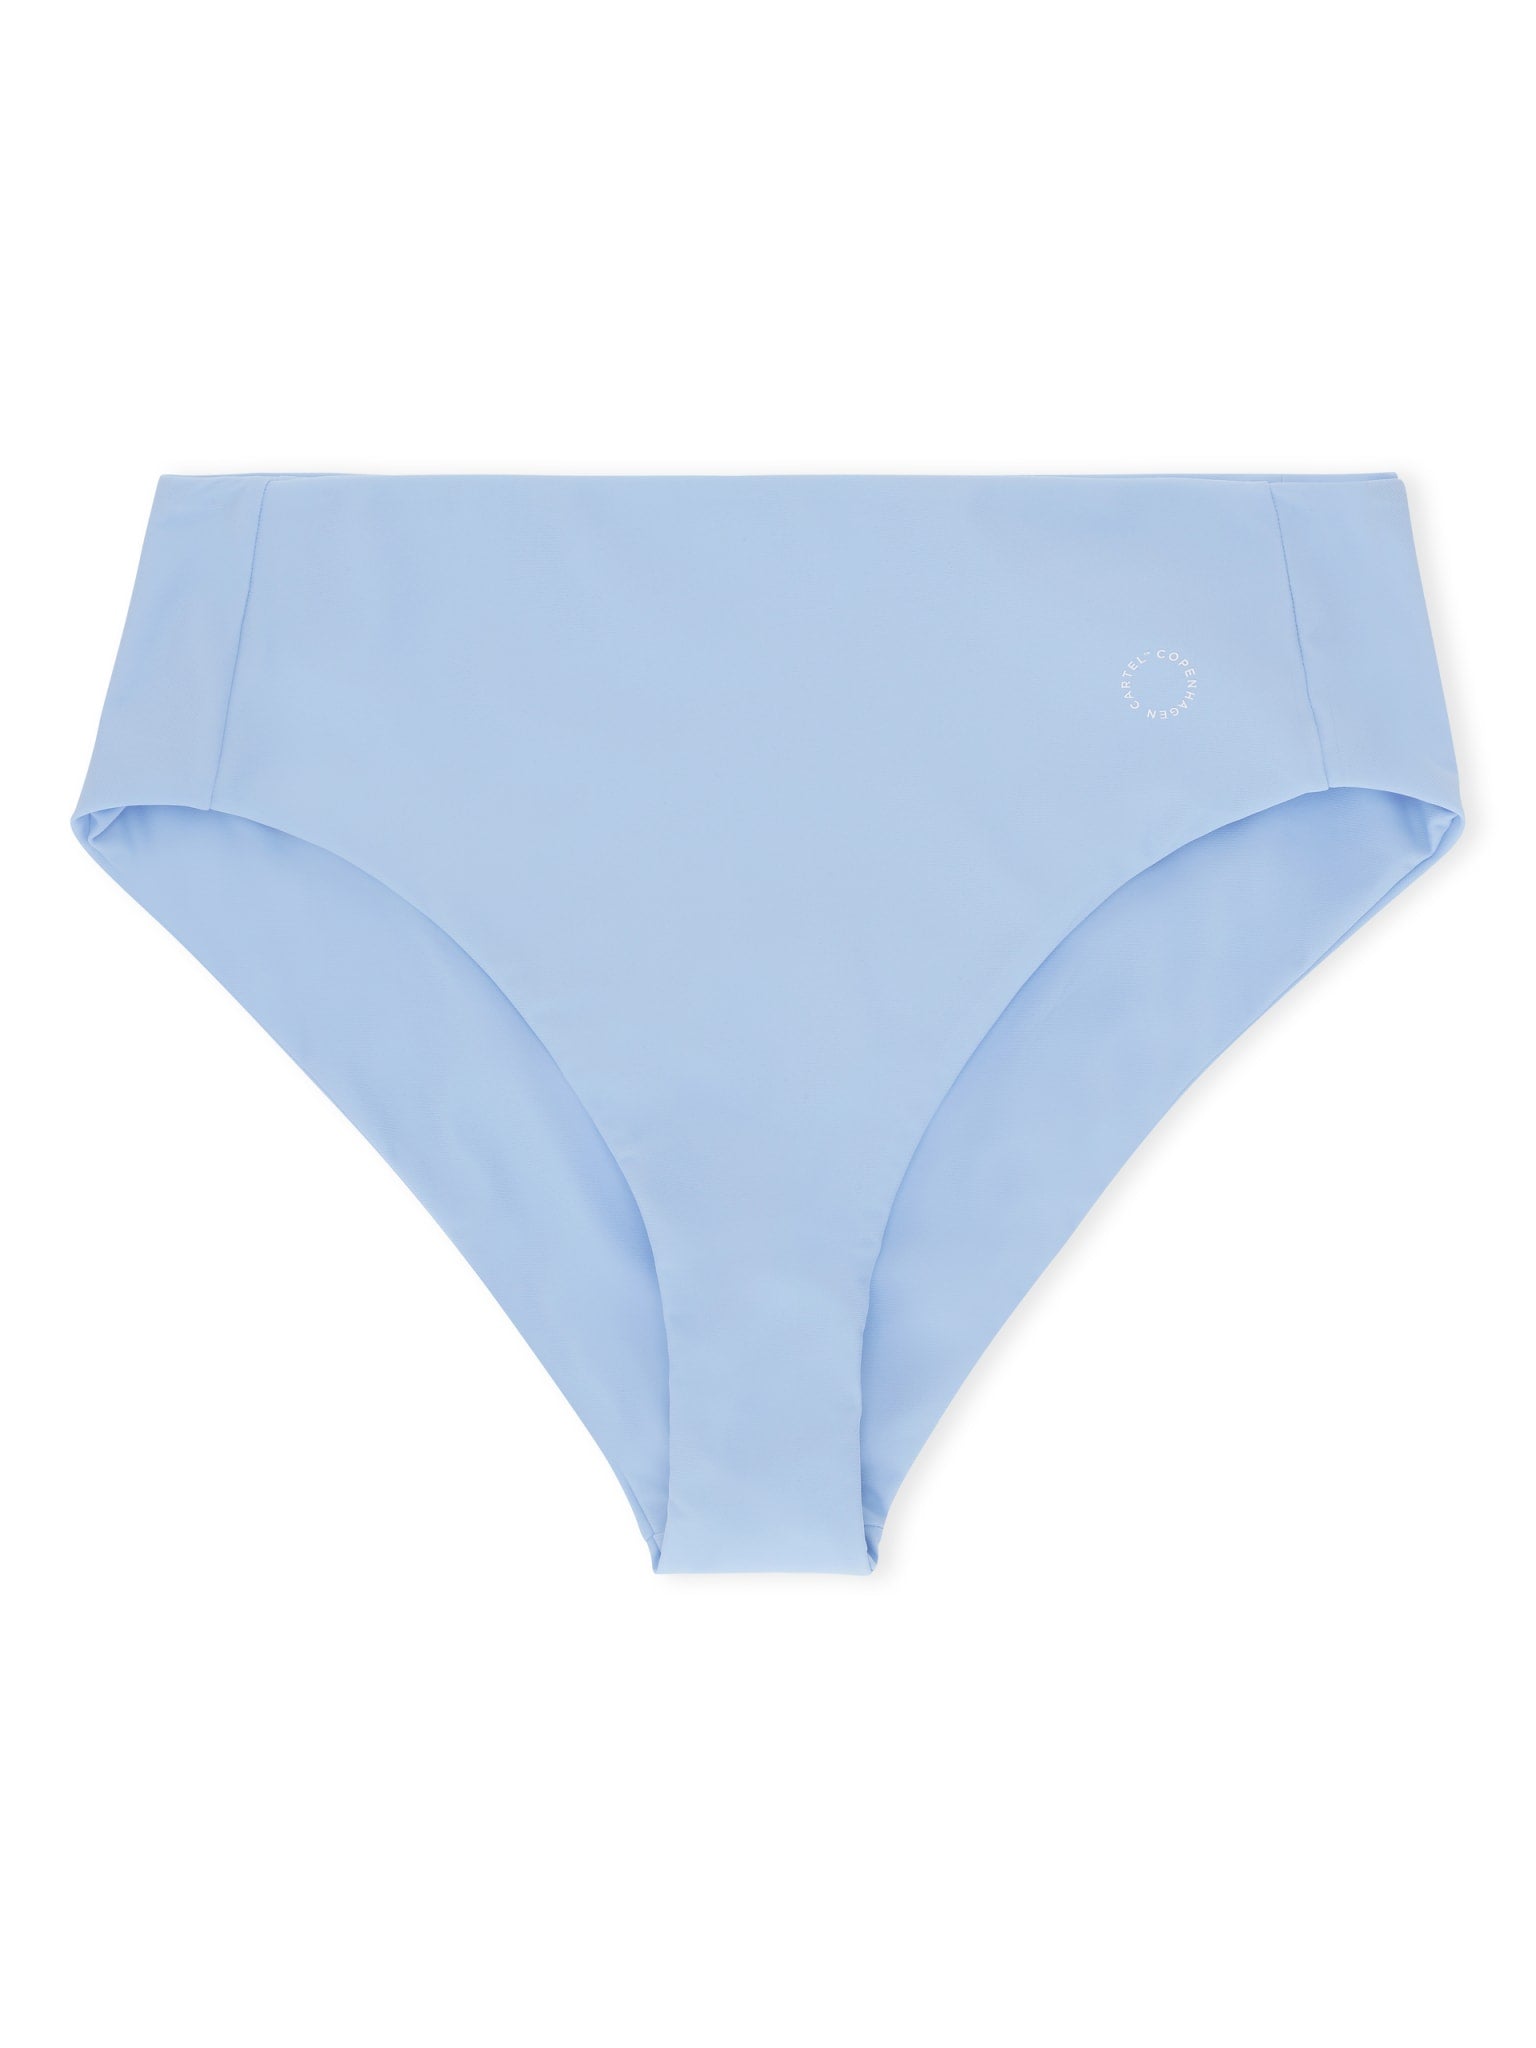 Ubud high-waist bikini bottom - Clear